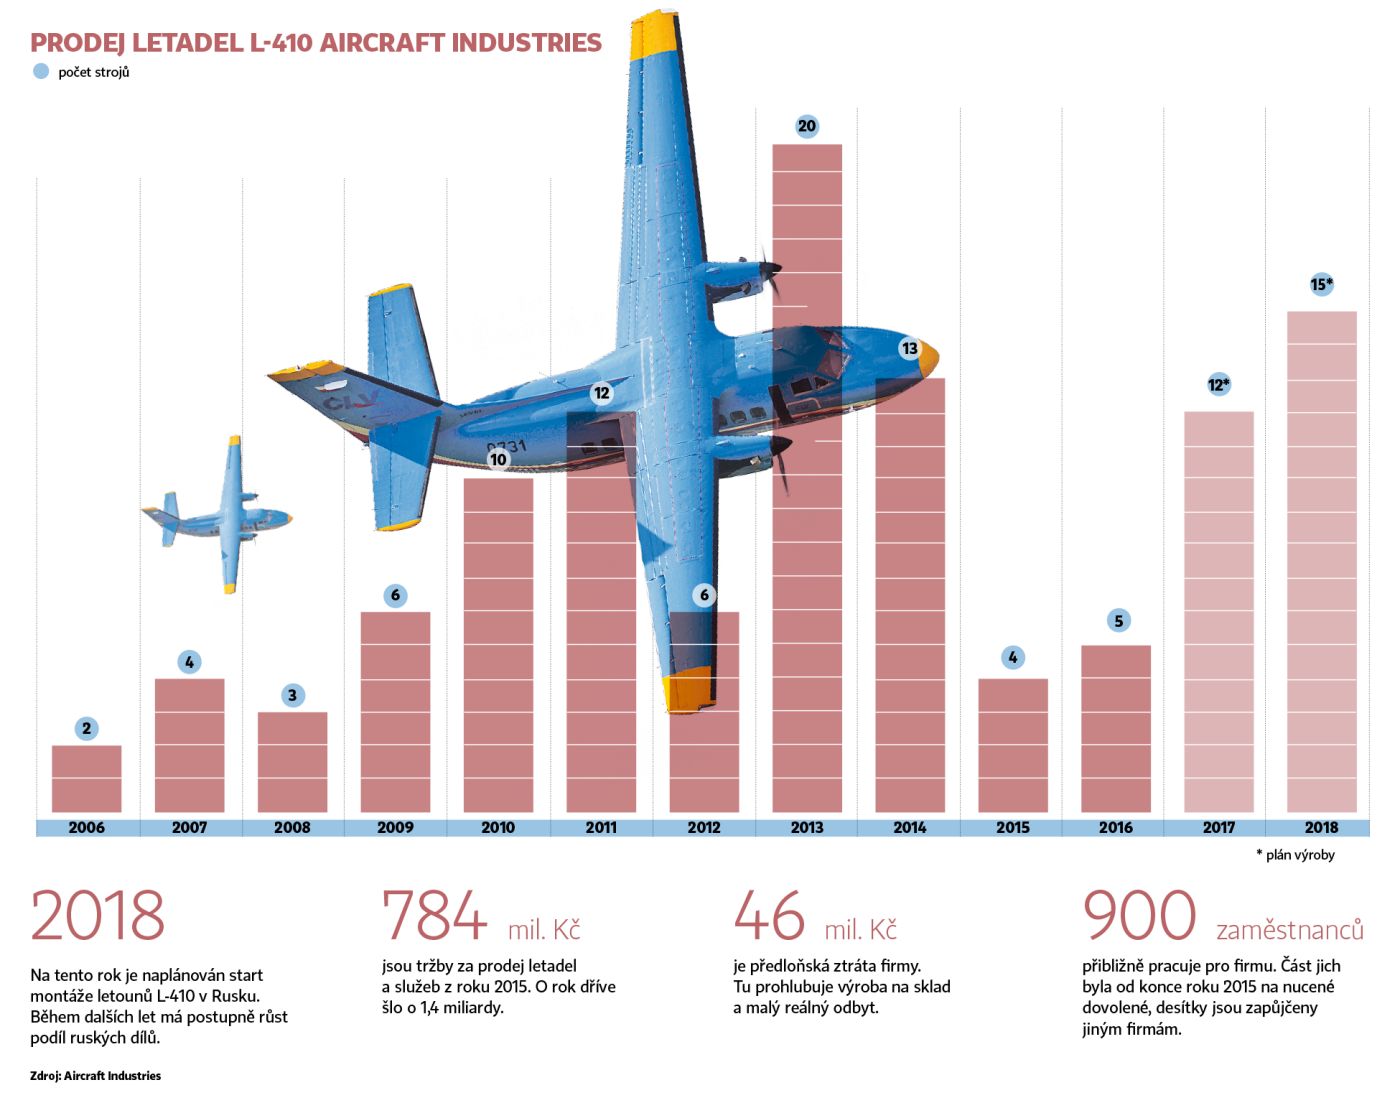 Výroba letadel v Aircraft Industries